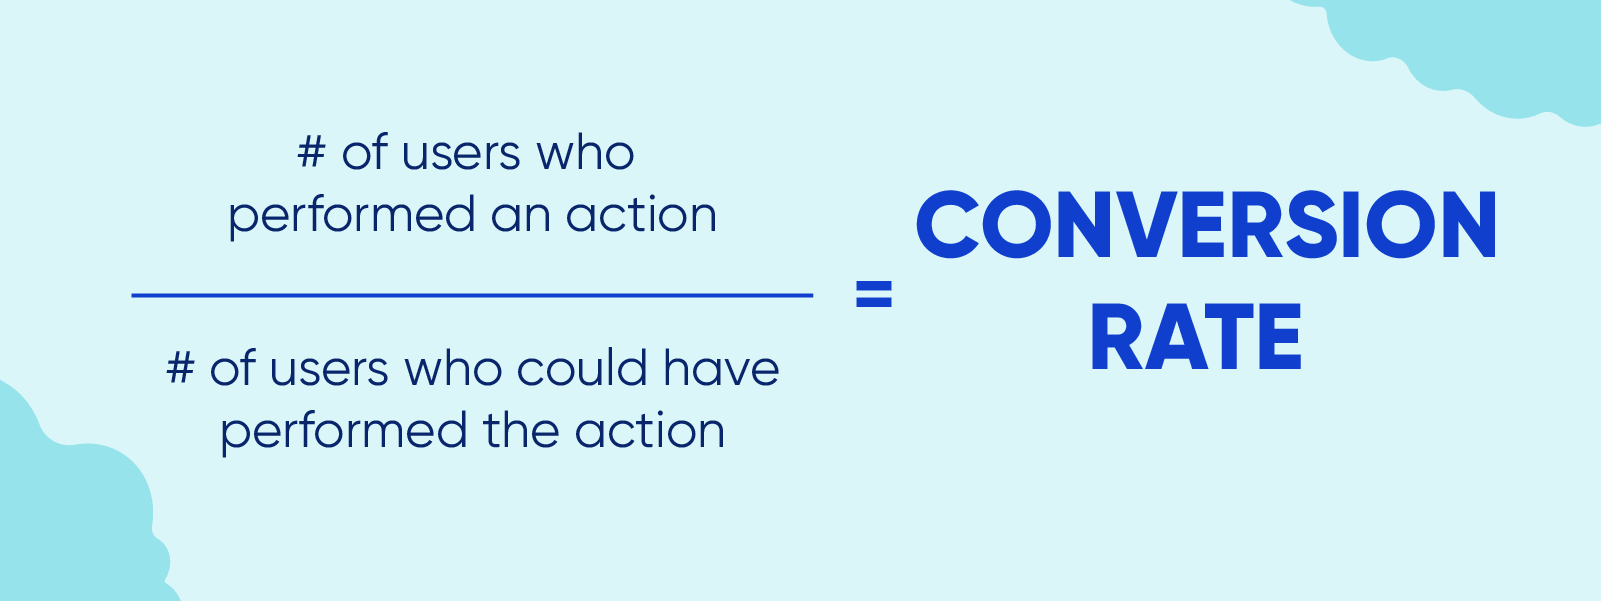 Formule de calcul du taux de conversion : nombre d'utilisateurs ayant réalisé une action divisé par le nombre d'utilisateurs qui auraient pu réaliser l'action.